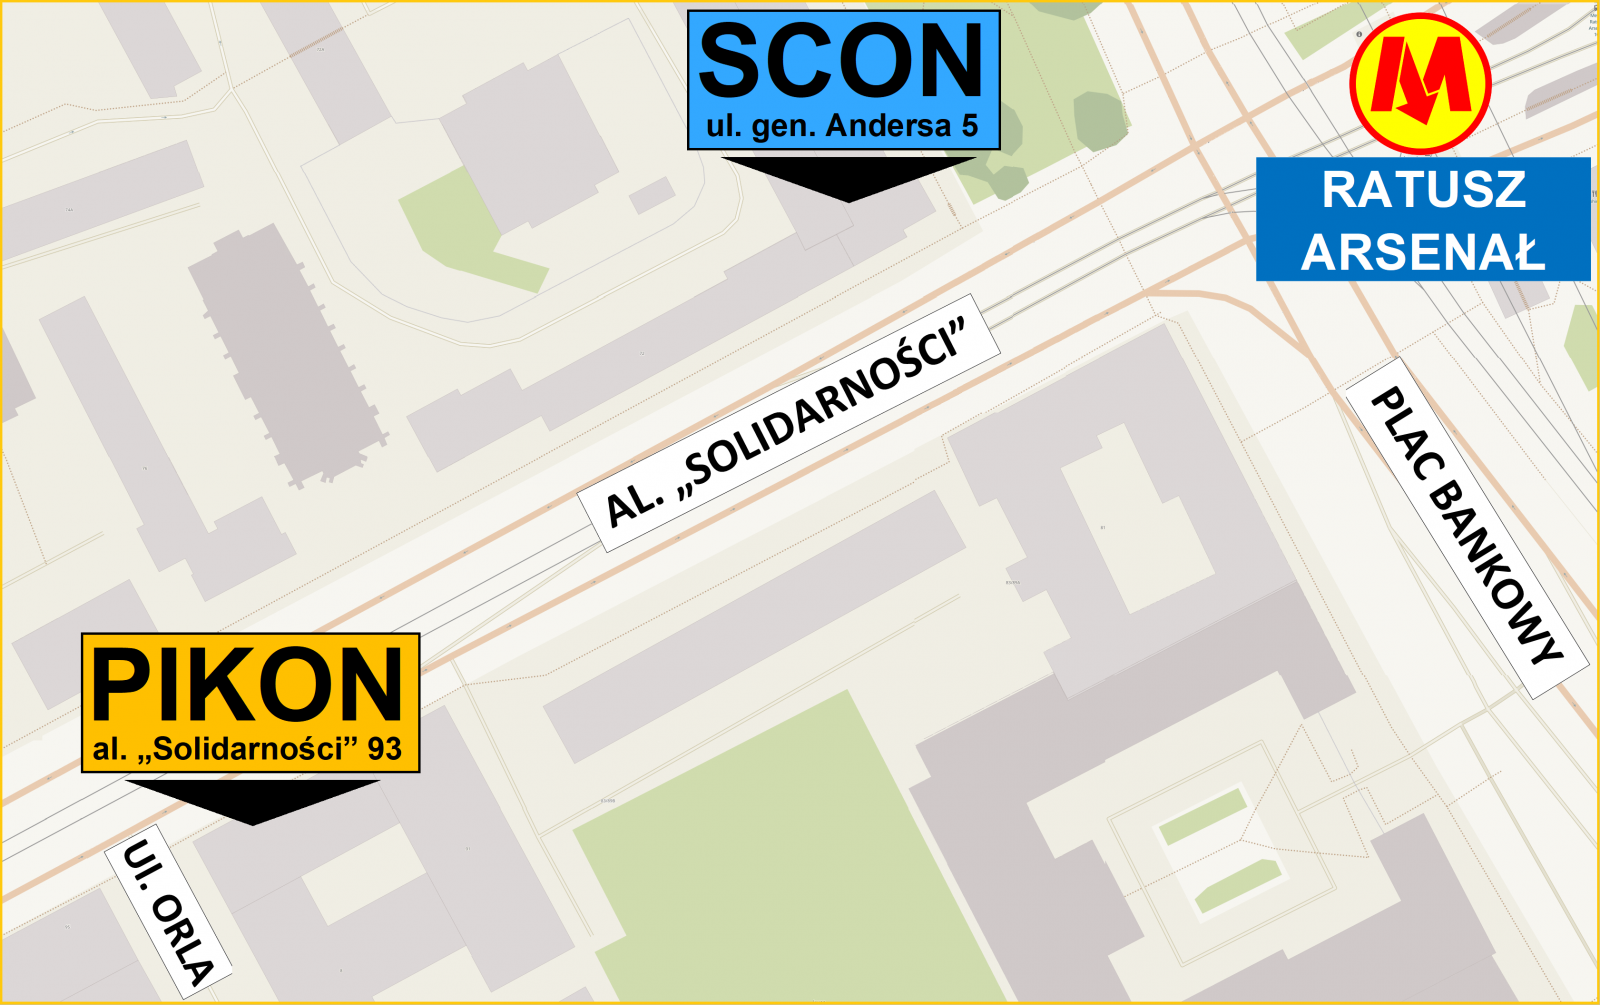 Mapa poglądowa - lokalizacja PIKON względem SCON oraz stacją metra Ratusz-Arsenał z układem ulic. [993.15 KB]